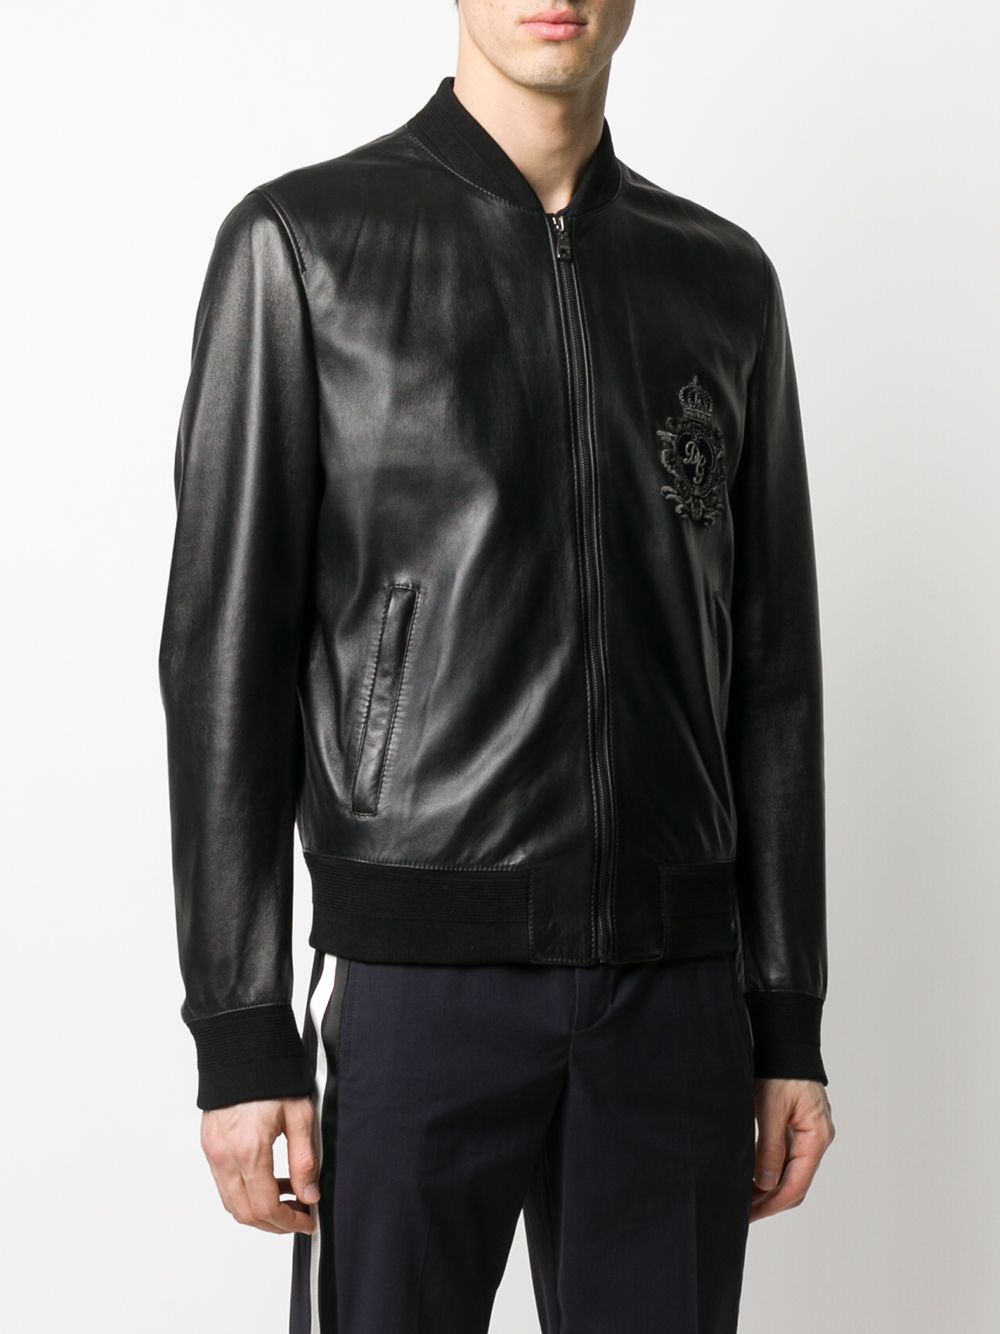 DG Bomber Jacket in Black - Dolce Gabbana